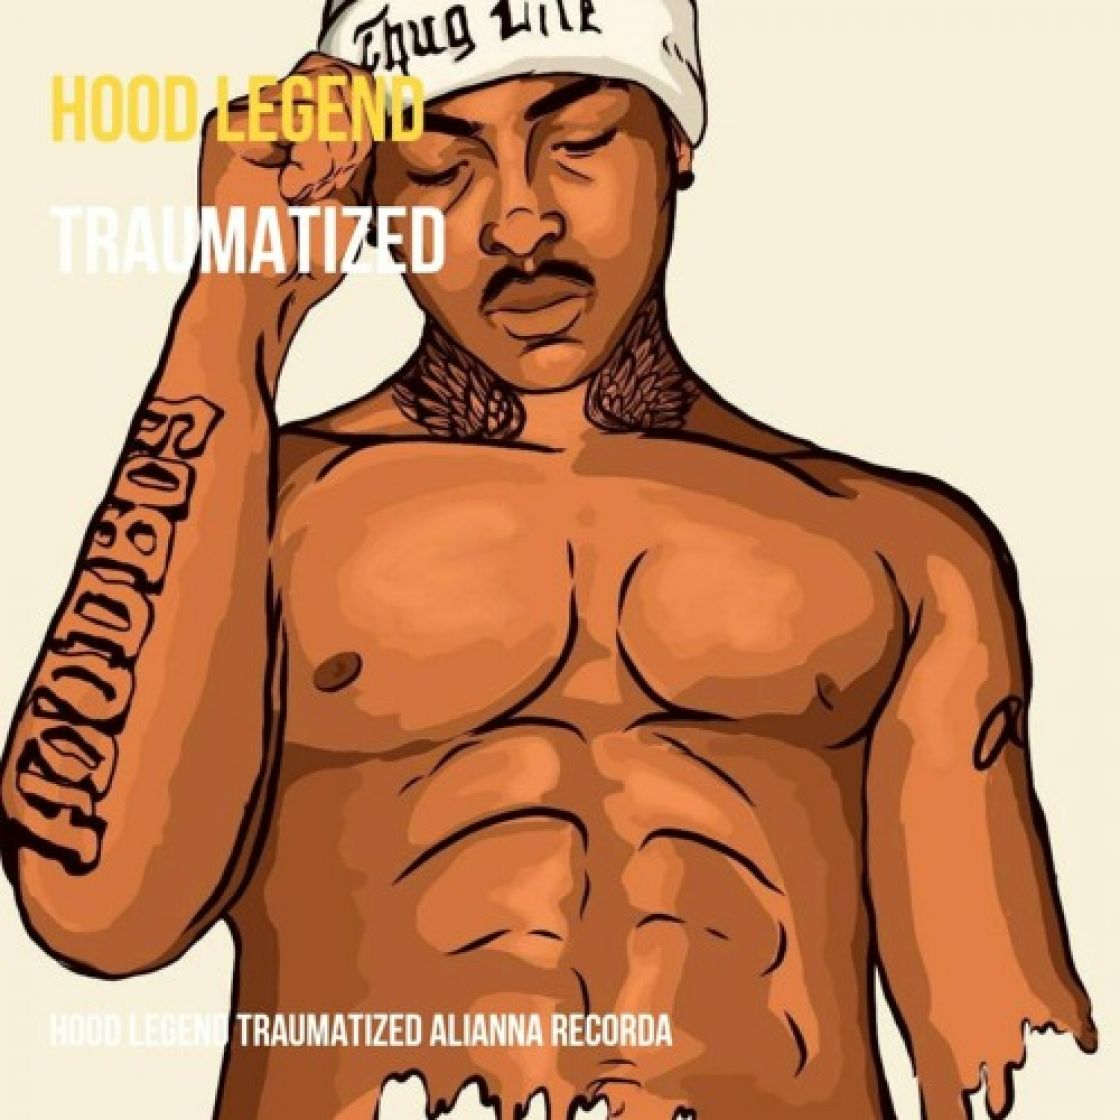 Hood Boy Legend new song Traumatized